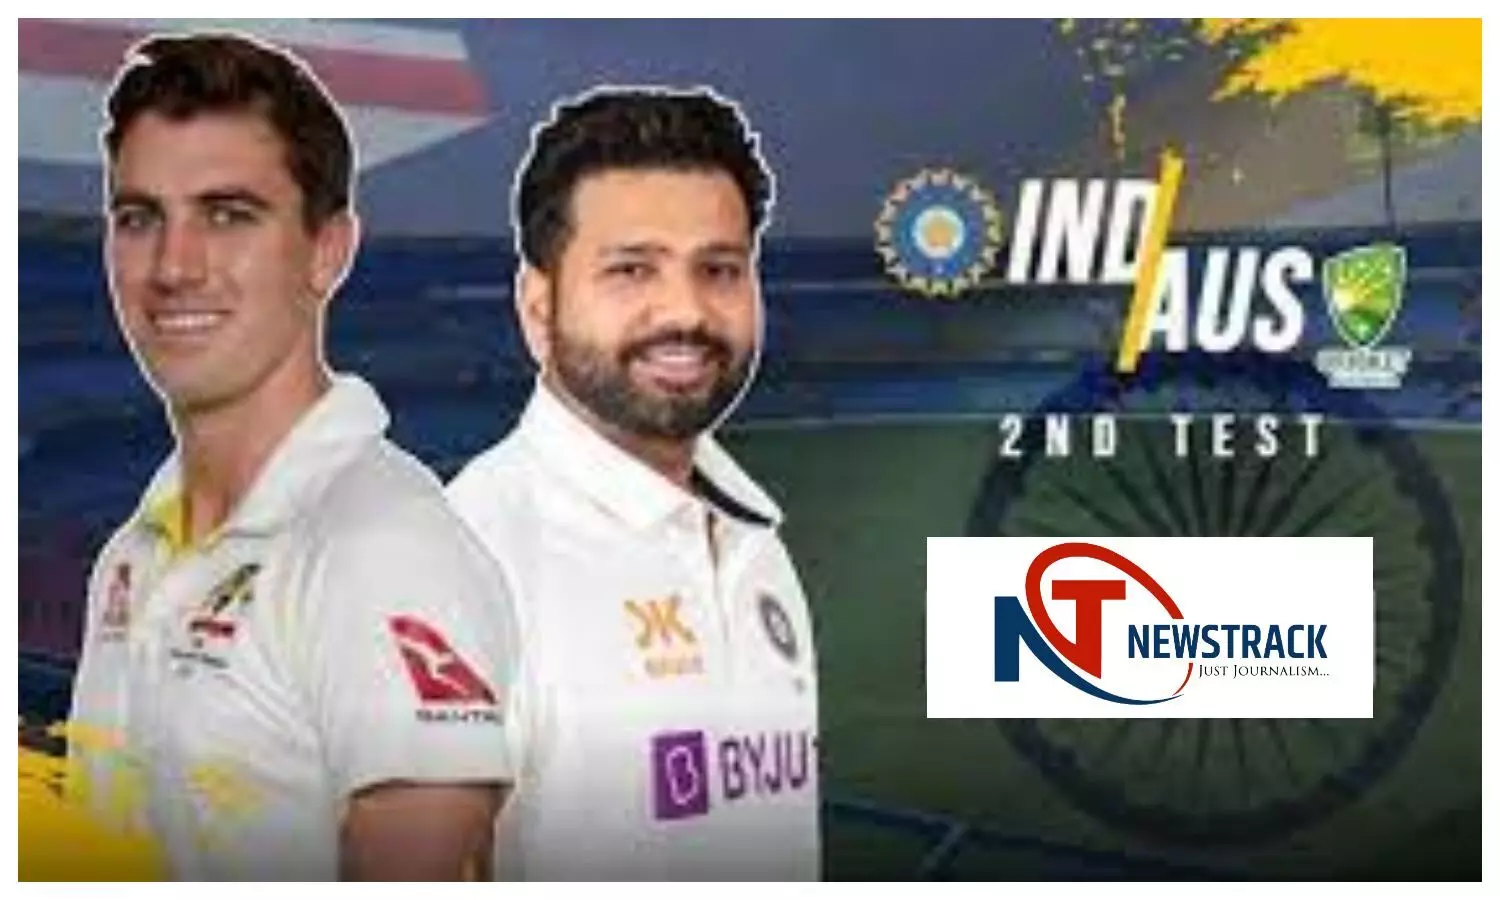 IND vs AUS 2nd Test: भारत बनाम ऑस्ट्रेलिया दूसरा टेस्ट 17 फरवरी से, जानें मैच का समय, कहाँ देख सकते हैं LIVE